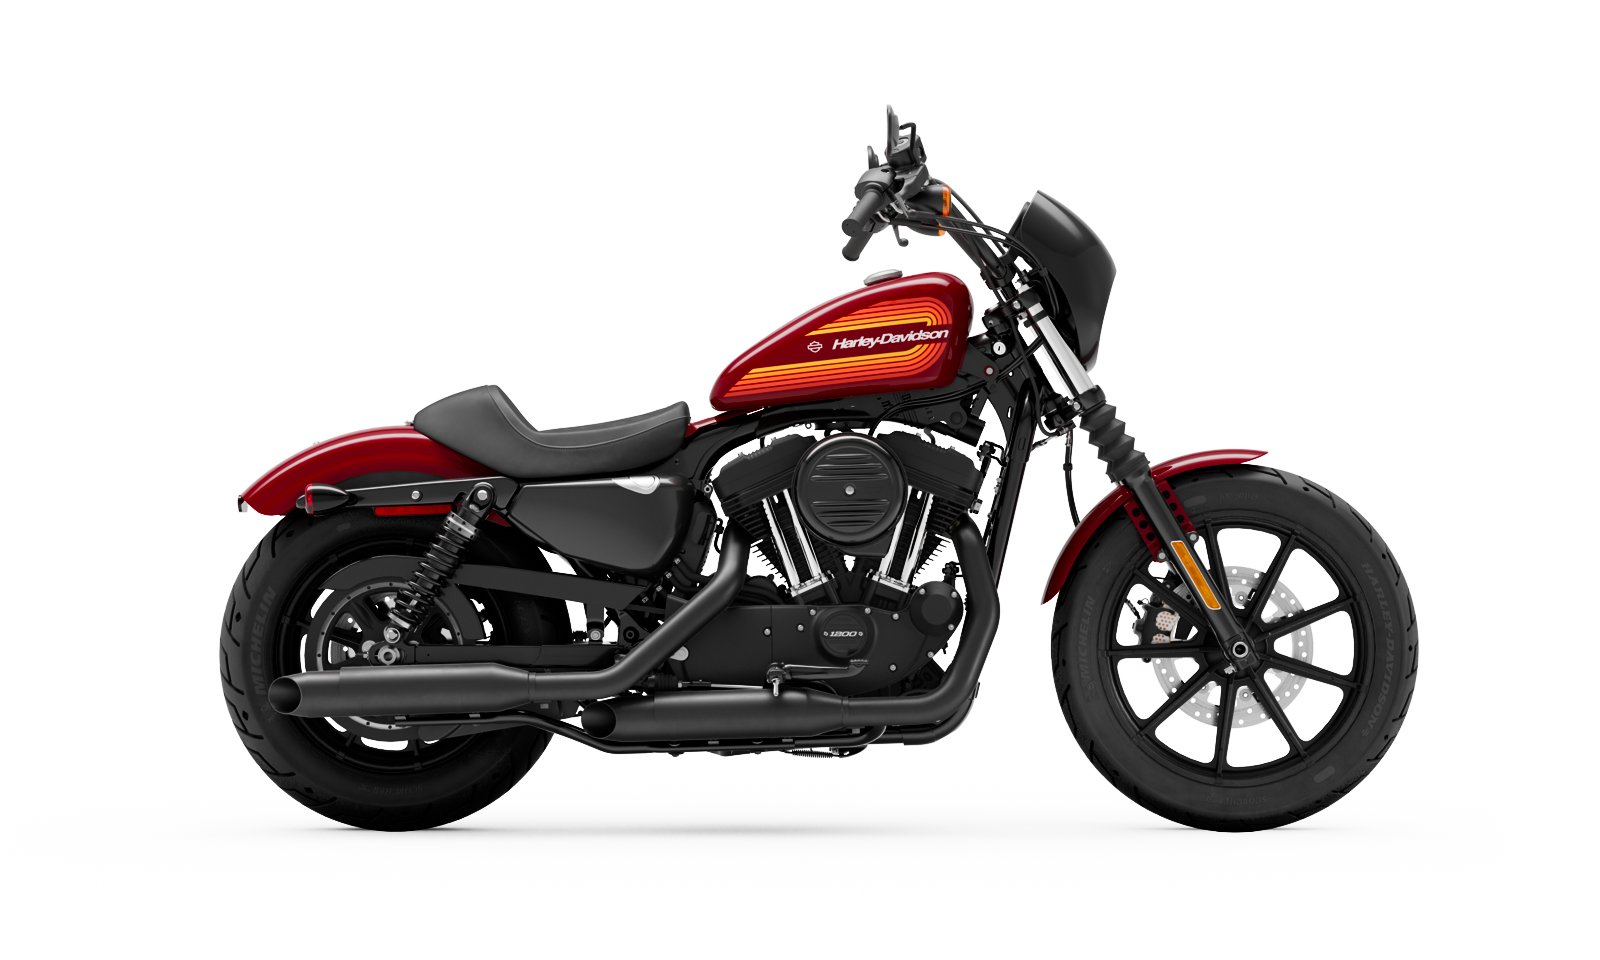 2021 Iron 1200 Motorcycle Harley Davidson New Zealand